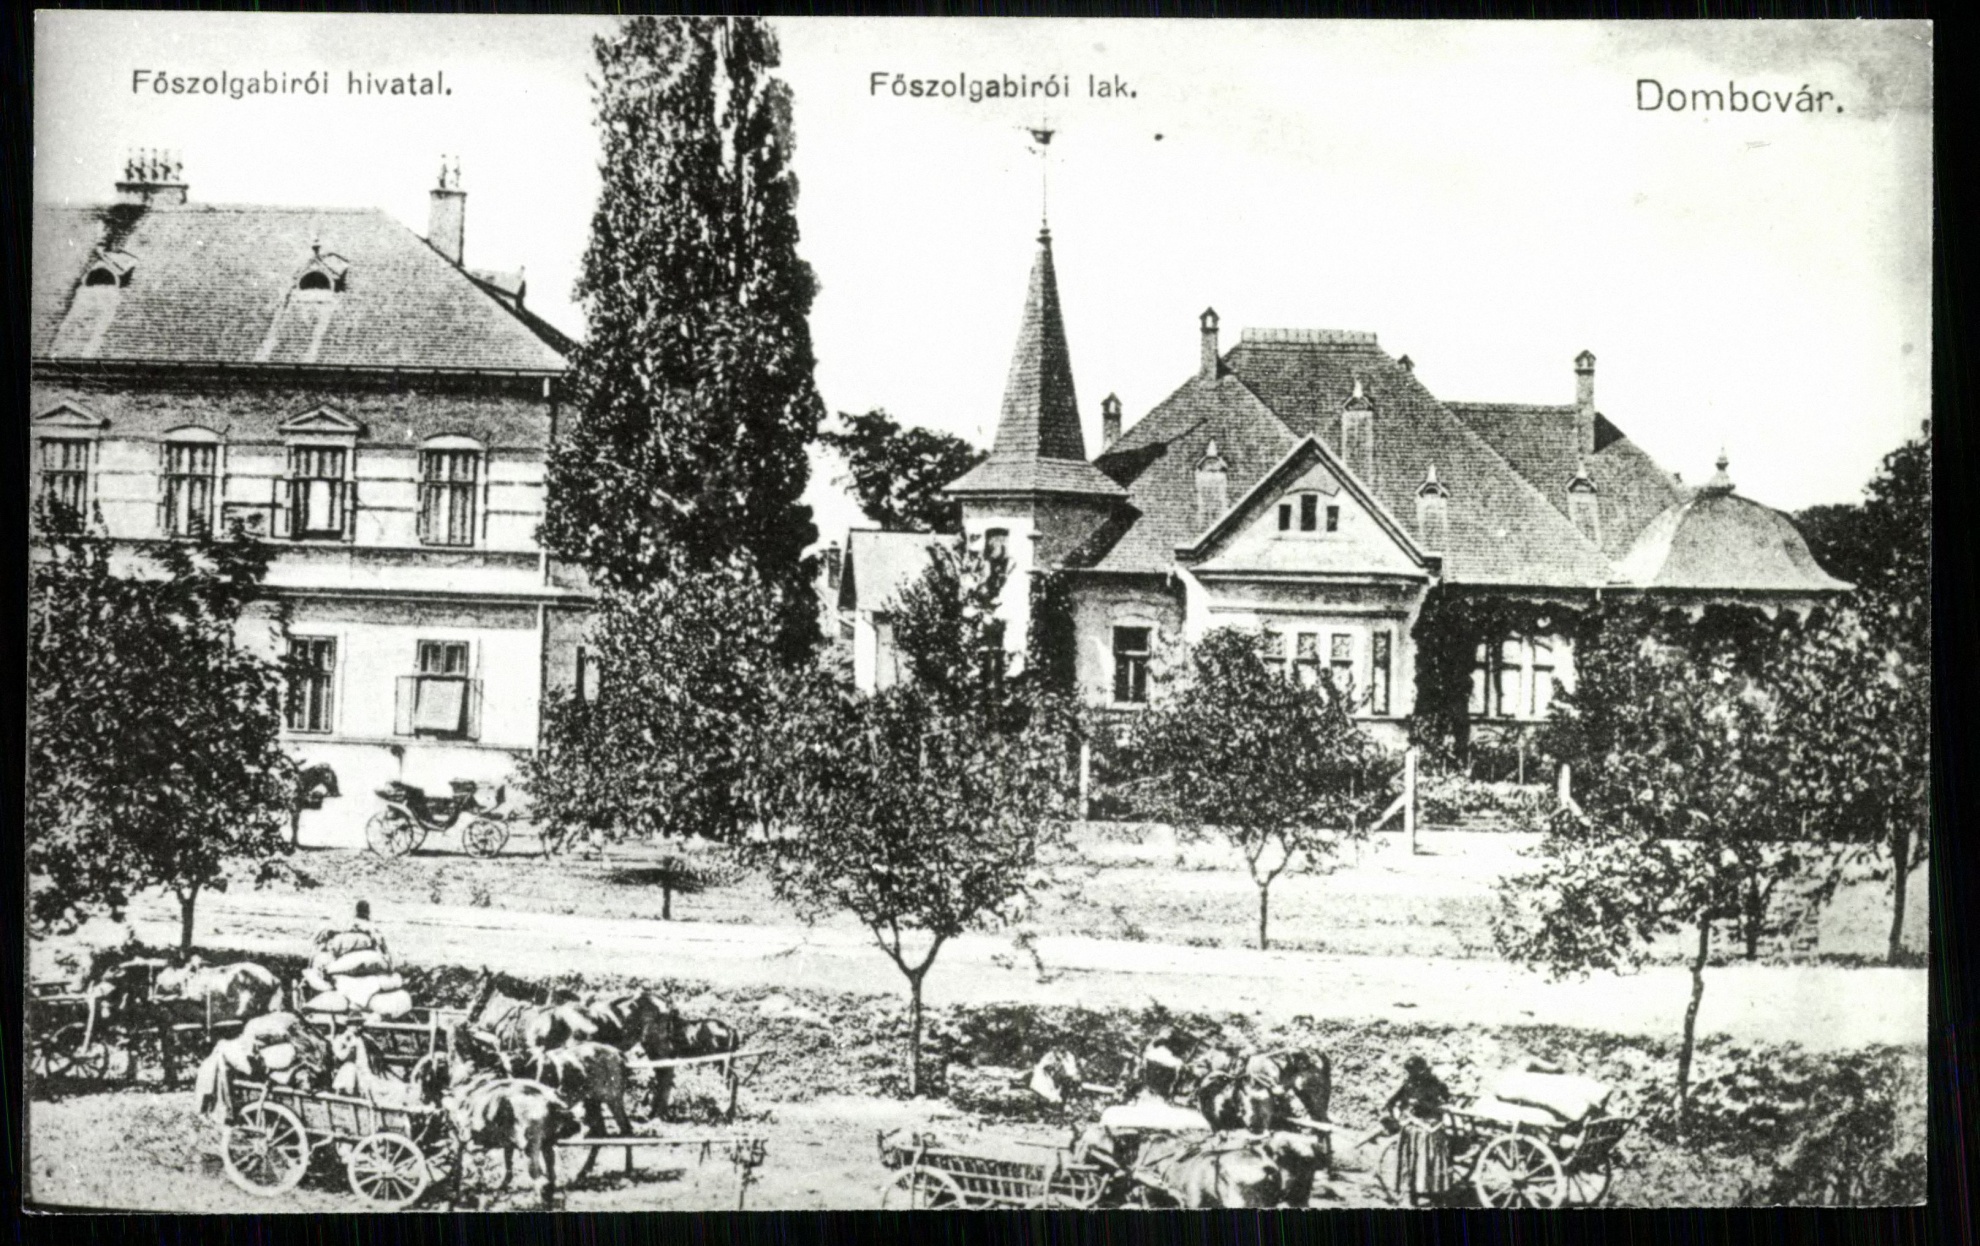 Dombóvár; Főszolgabírói Hivatal; Főszolgabírói lak (Magyar Kereskedelmi és Vendéglátóipari Múzeum CC BY-NC-ND)